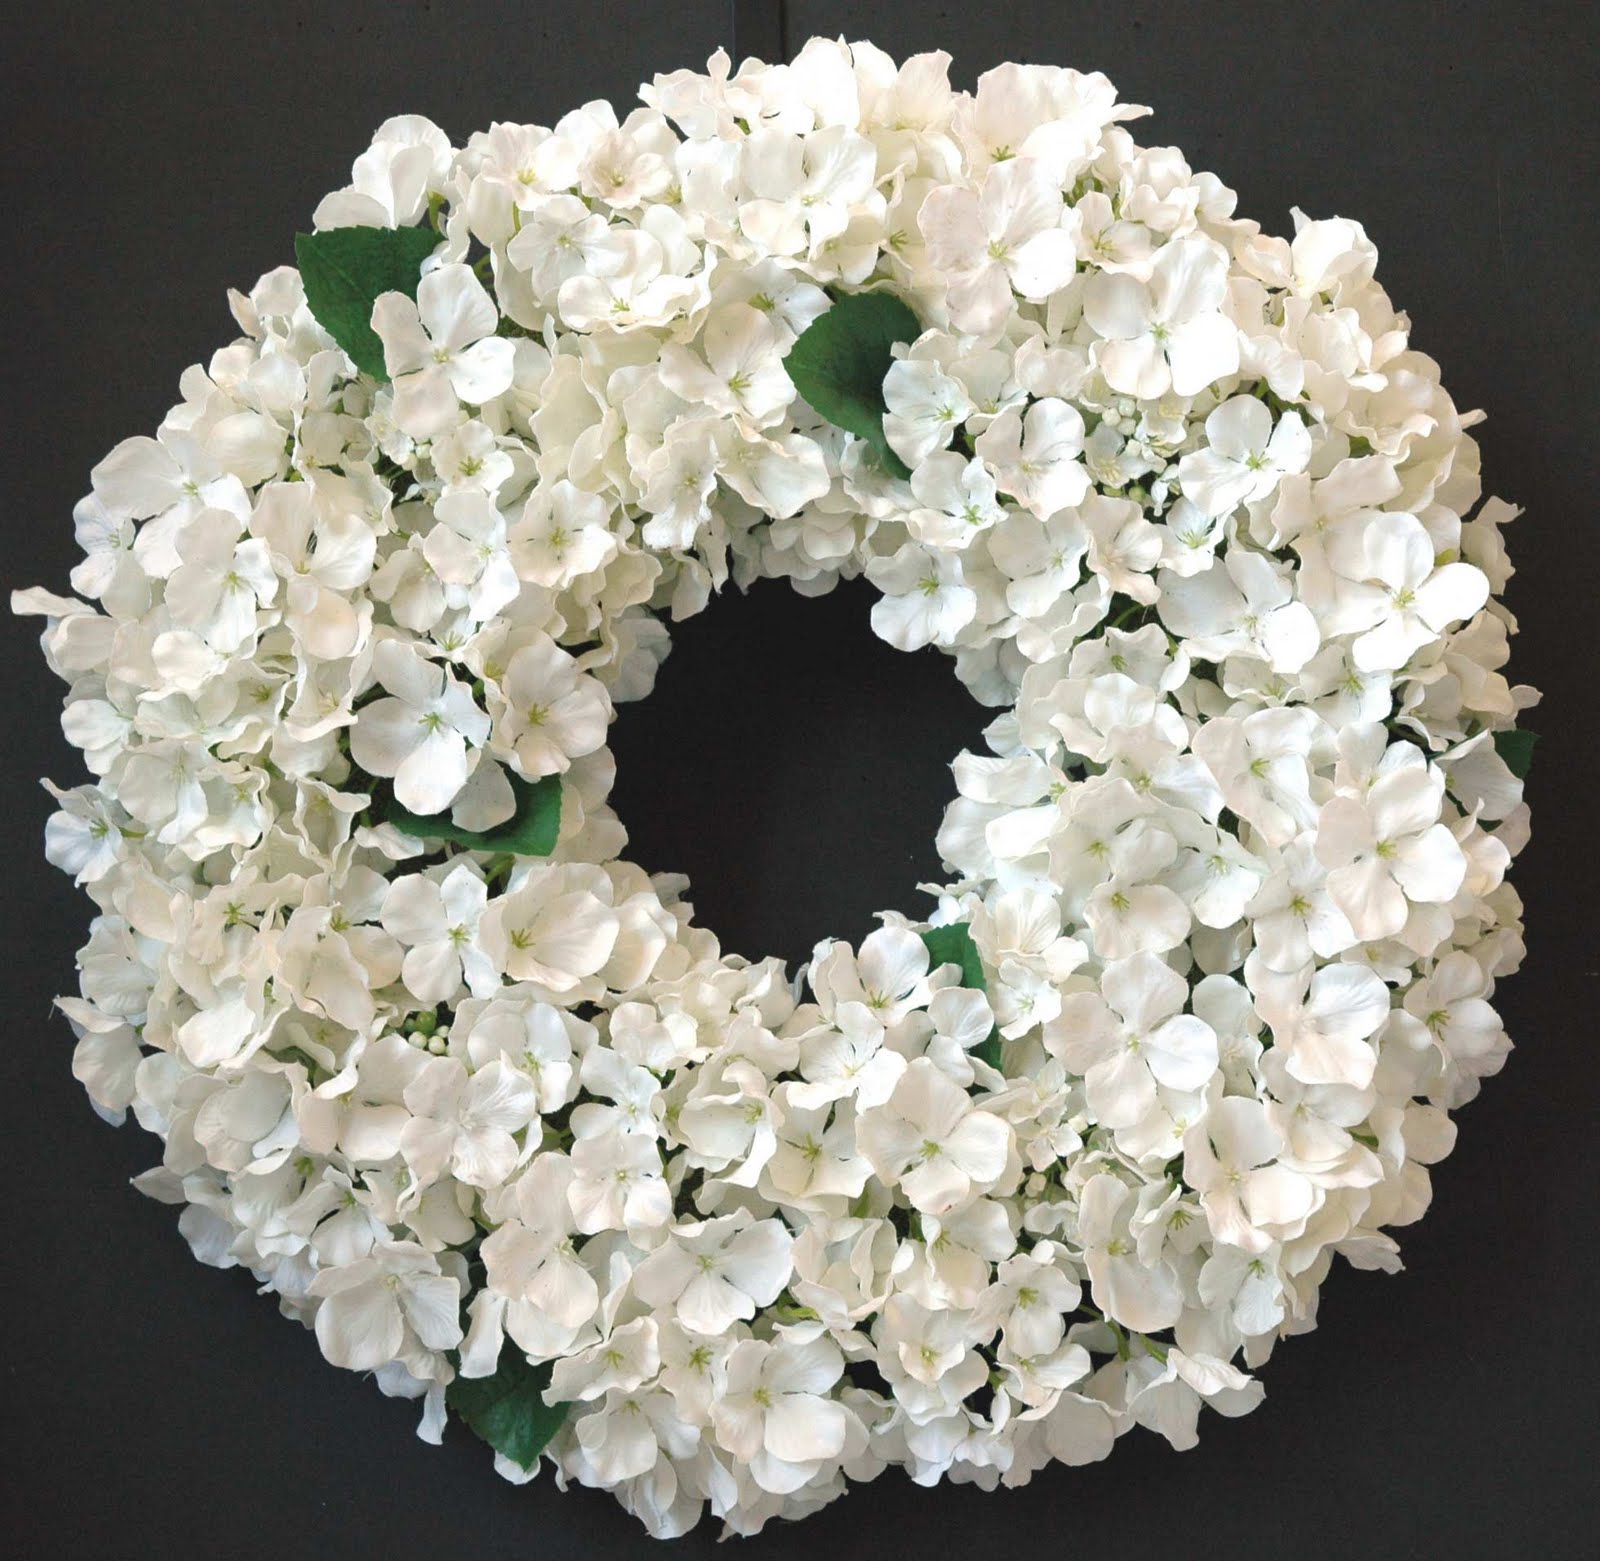 Hoa tươi được sử dụng trong tang lễ mang nhiều nét ý nghĩa đẹp